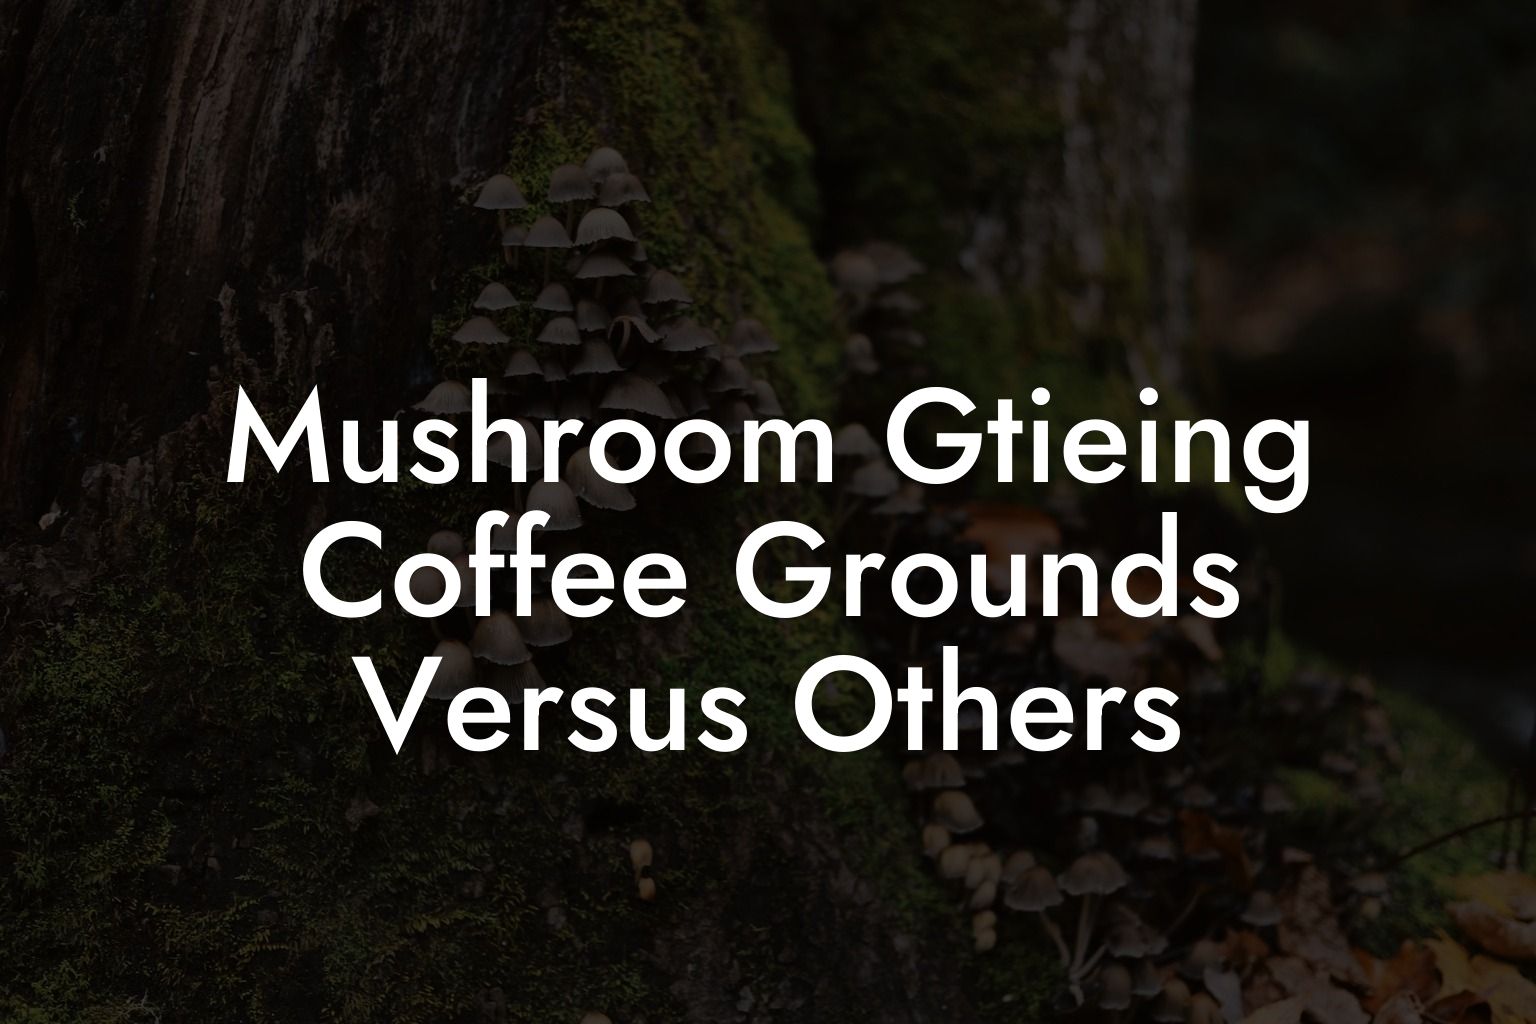 Mushroom Gtieing Coffee Grounds Versus Others